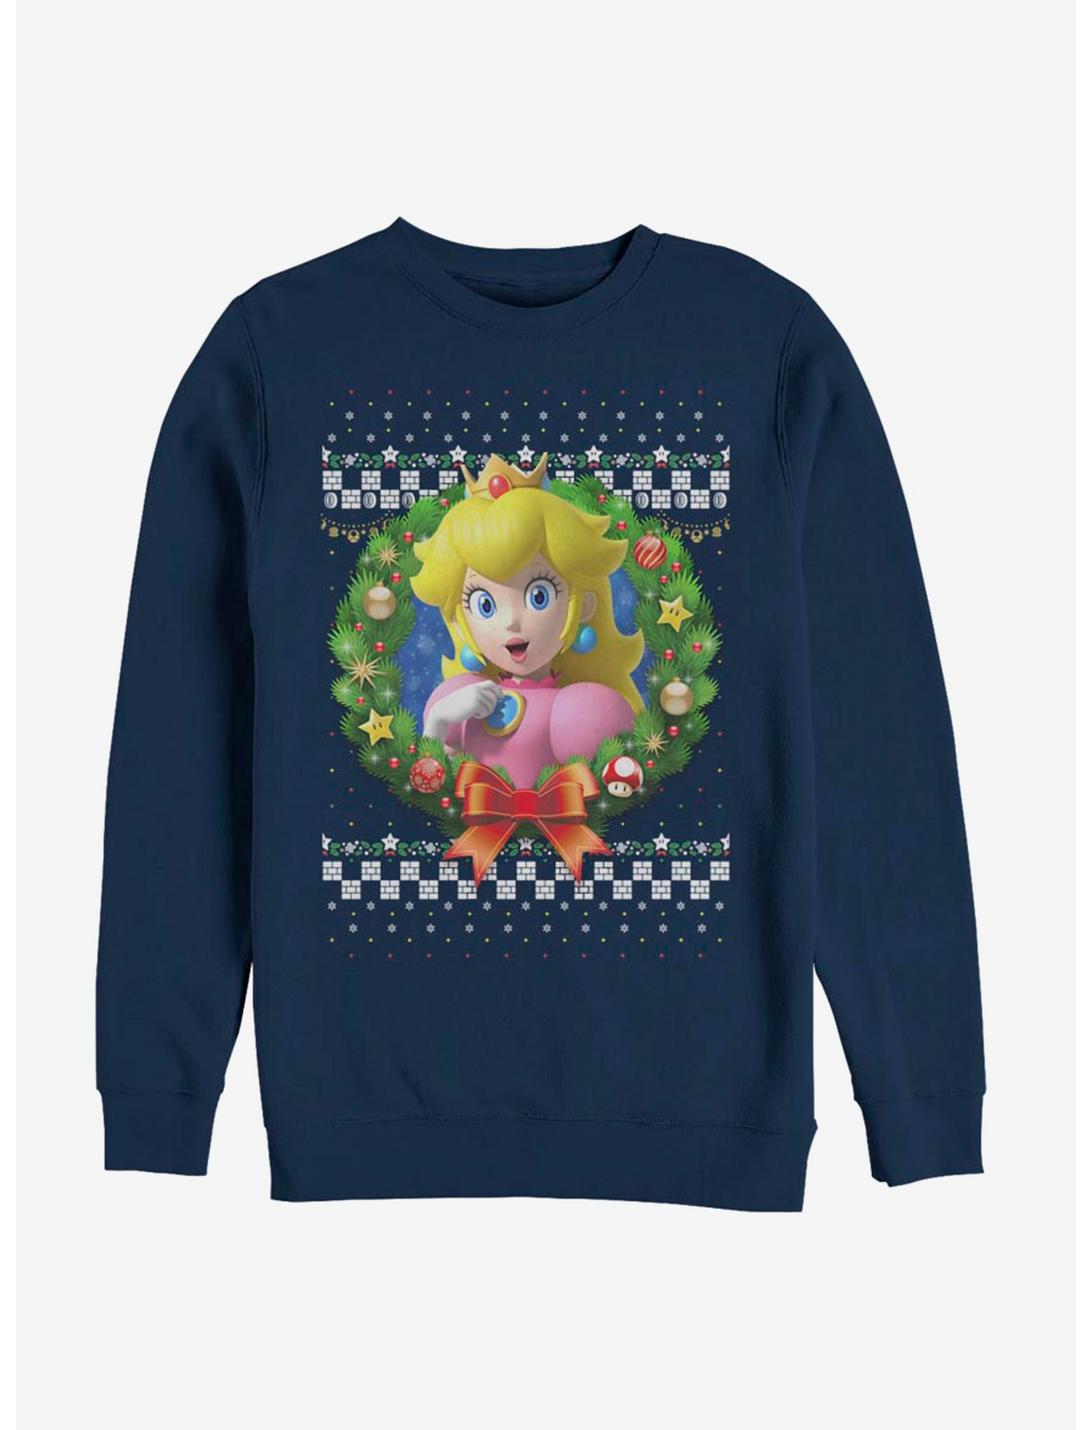 Nintendo Super Mario Wreath Princess Peach 3D Sweatshirt, NAVY, hi-res